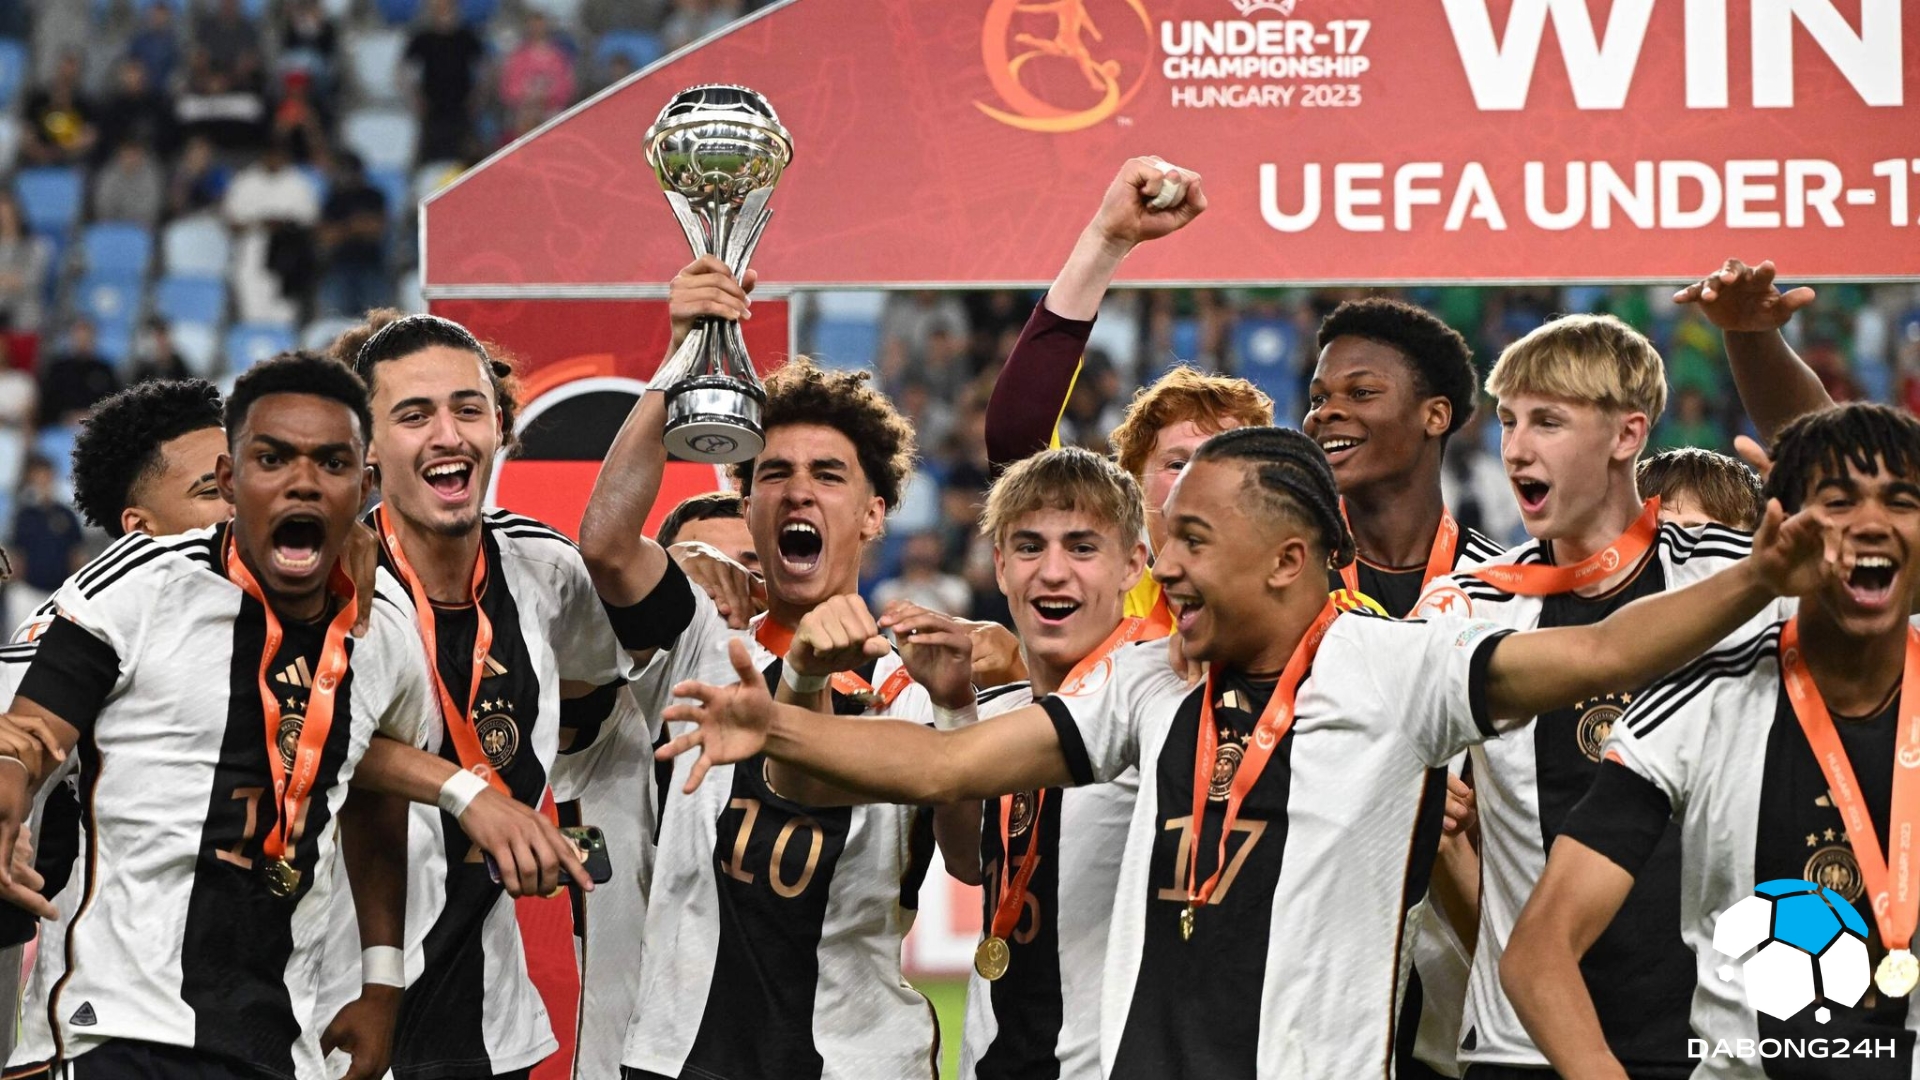 Thực tế ảo giúp đội tuyển U17 Đức vô địch châu Âu, kính VR giúp cải thiện khả năng quét mắt